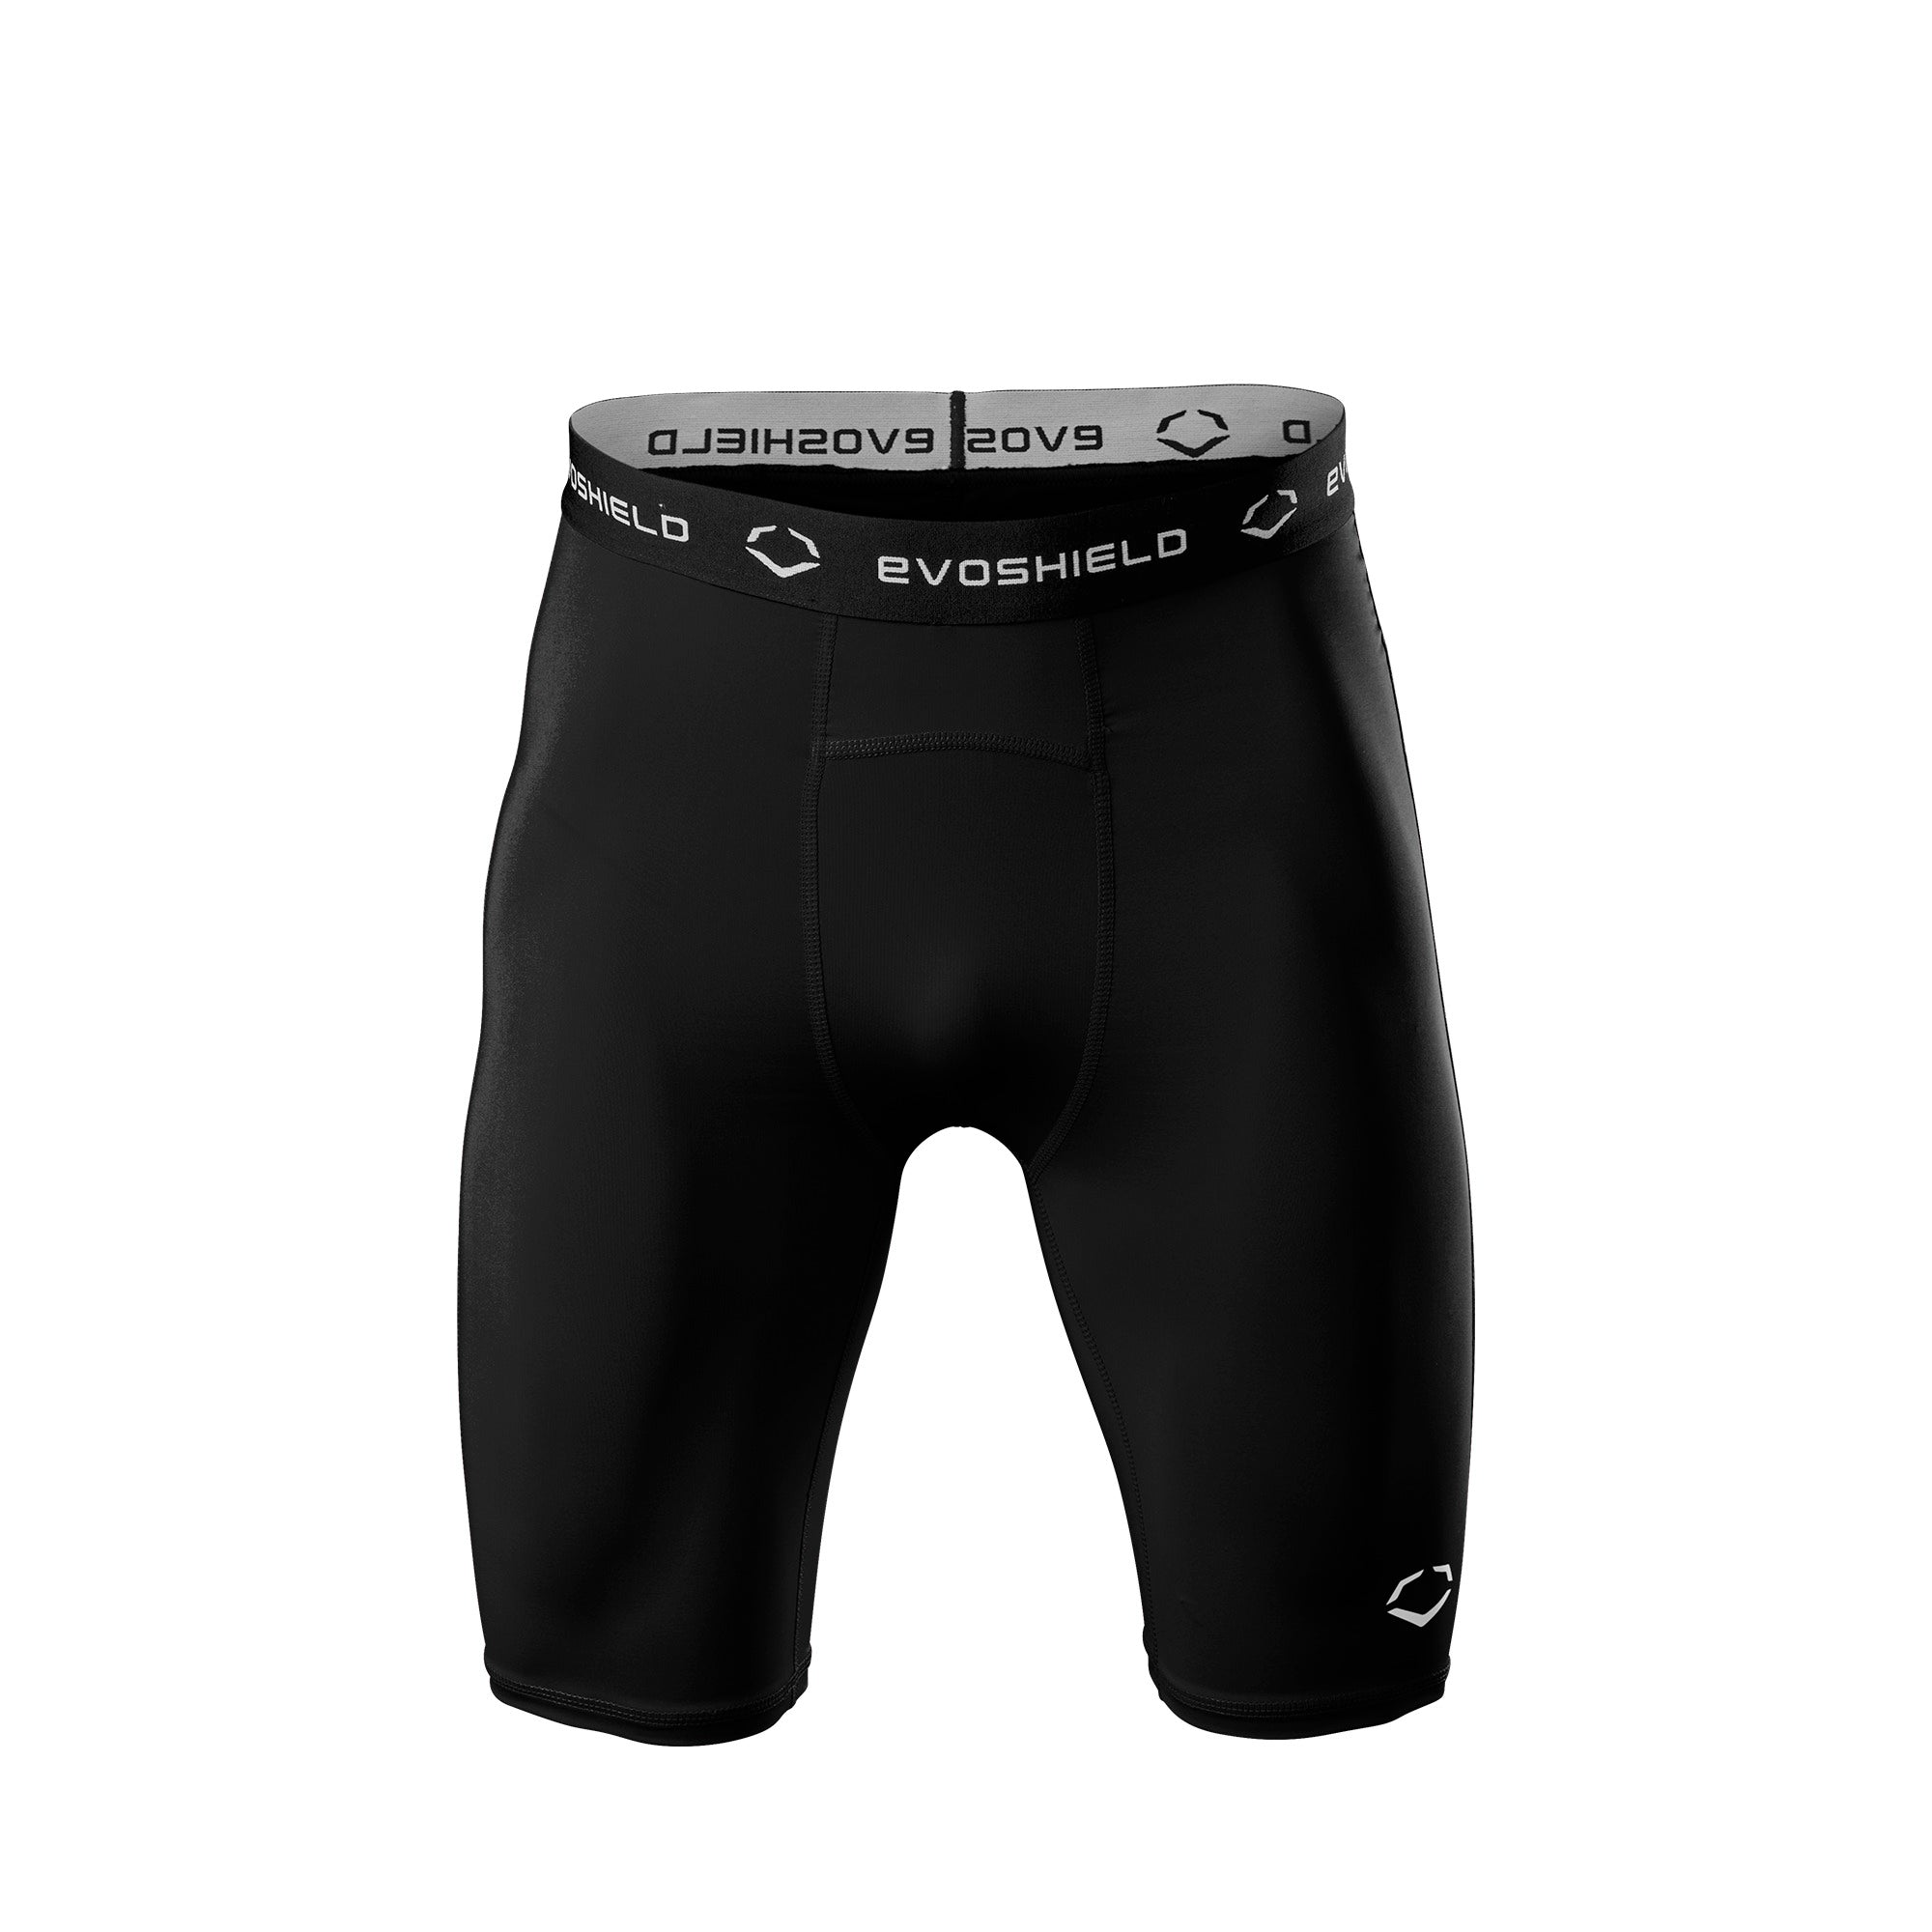 Soccer Compression Shorts, Slider Shorts, Spandex Shorts, adidas Compression  Shorts, Soccer Undershorts